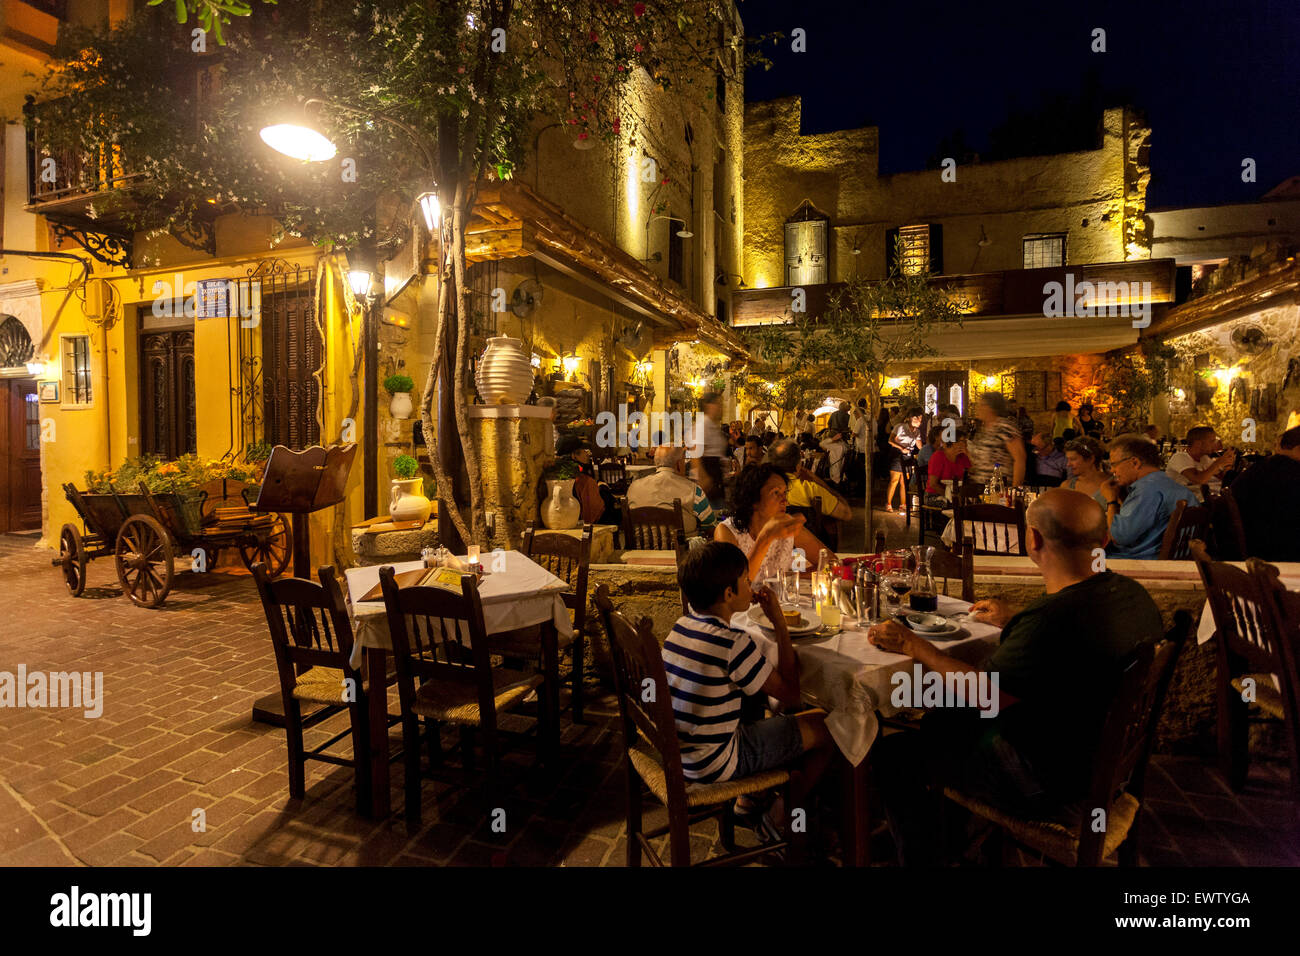 Alter venezianischer Hafen von Chania Kreta Restaurant Griechenland People Street bei Nacht Chania Taverna Bar Kreta, griechische Inseln Stockfoto